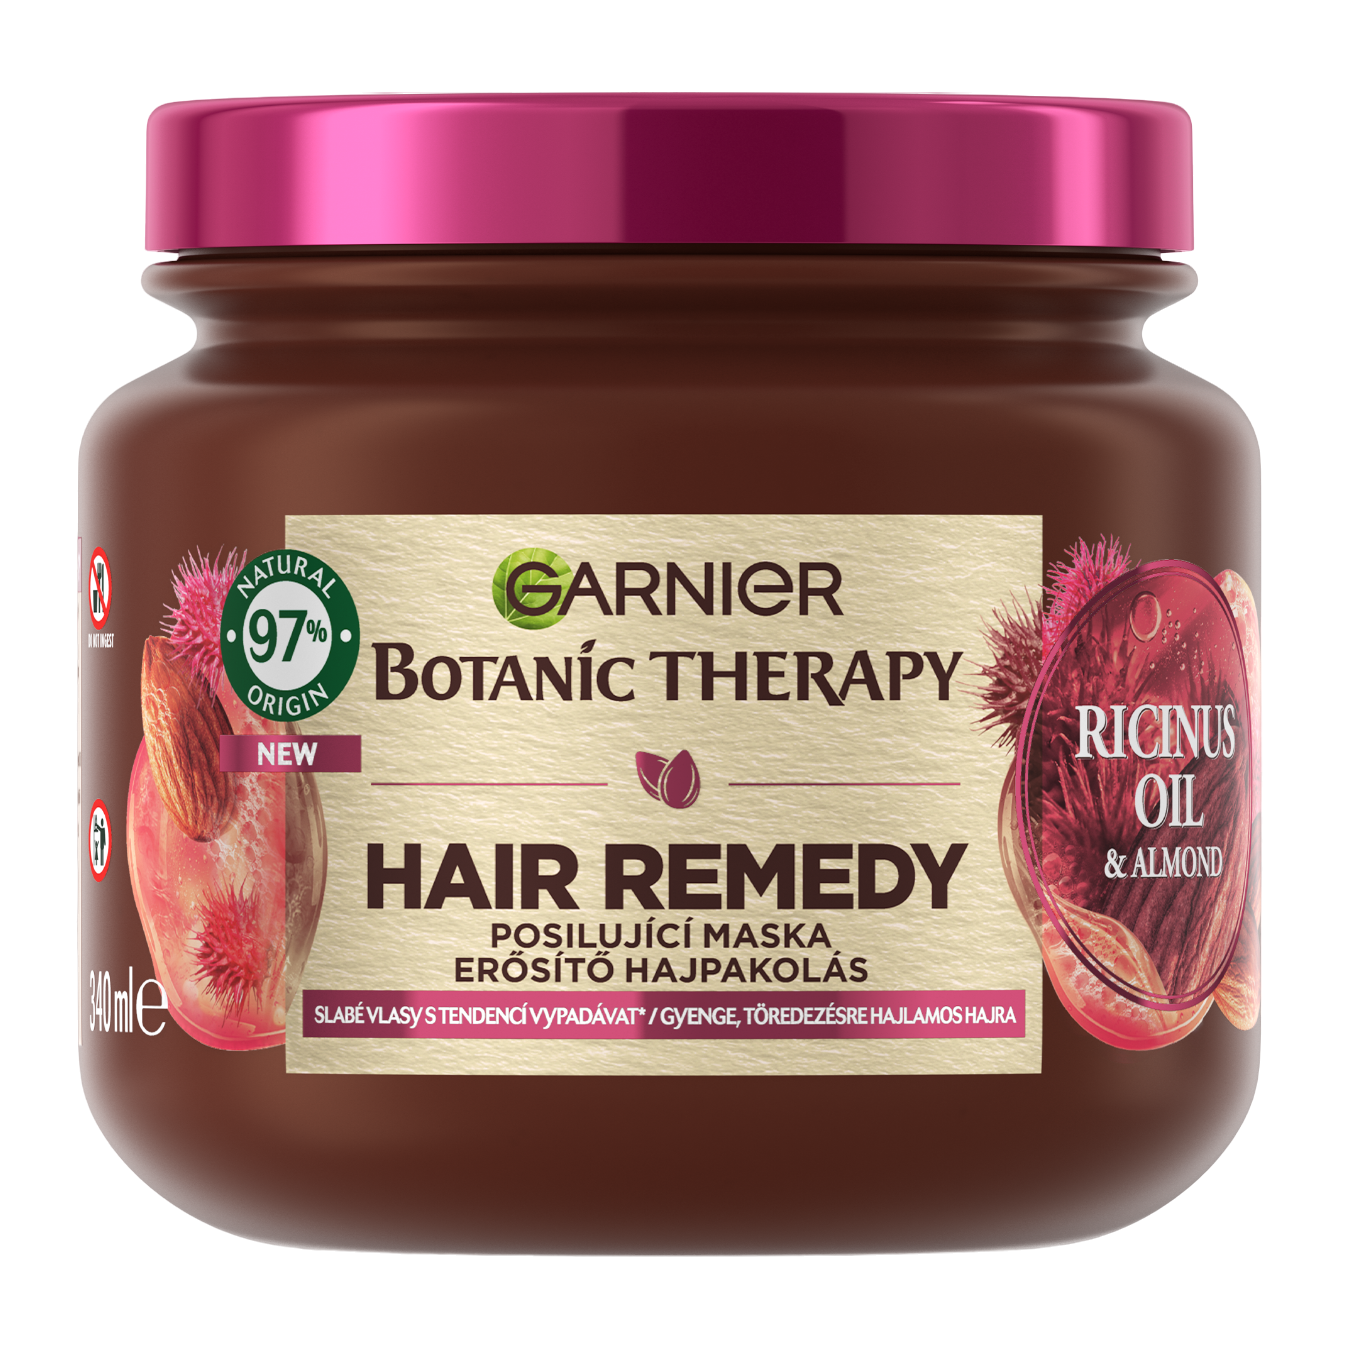 Маска Garnier Botanic Therapy Ricinus Oil & Almond Укрепляющая для слабых, склонных к выпадению волос 340 мл - фото 1